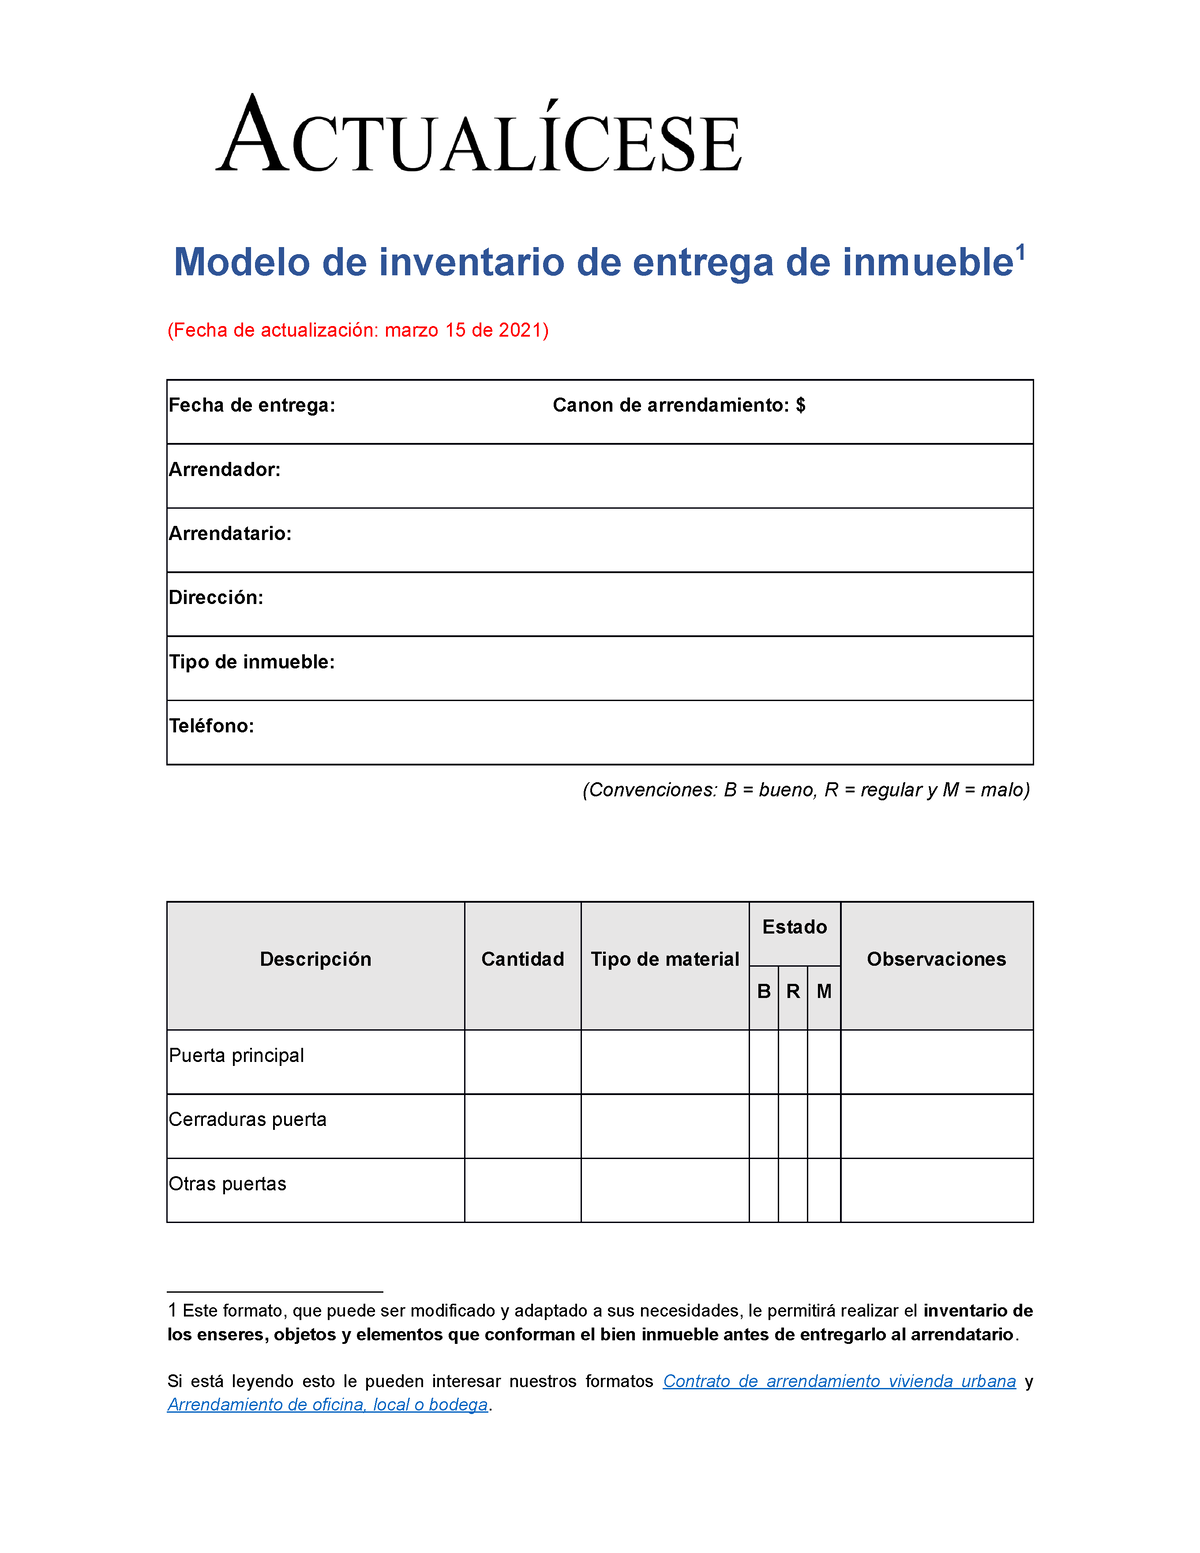 Va21 Acta Inventario Entrega Inmueble Modelo De Inventario De Entrega De Inmueble 1 Fecha De 6537